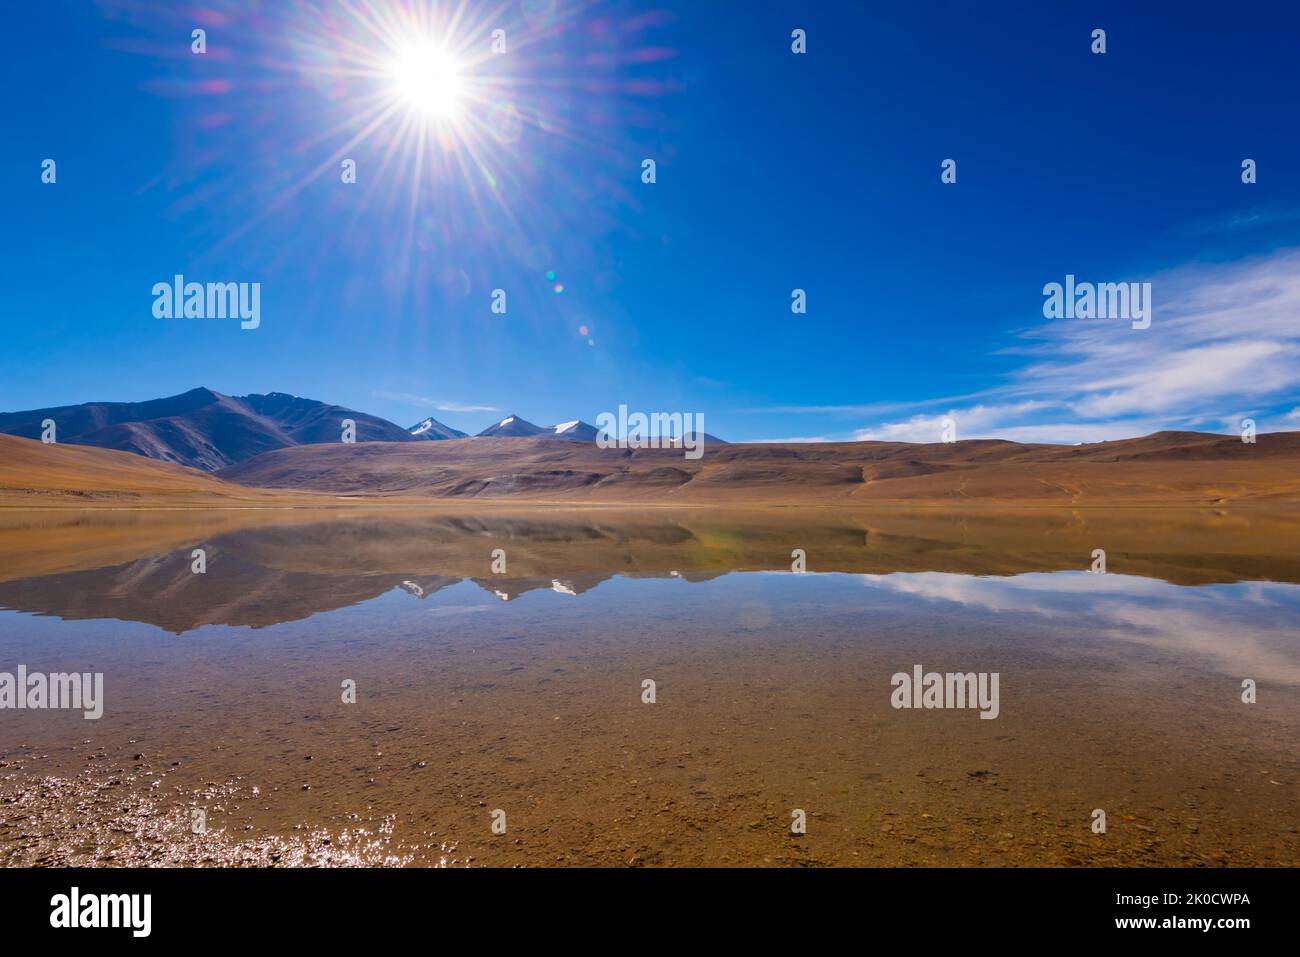 Une réflexion en début de matinée sur les coups de soleil et les étoiles dans l'un des lacs de la réserve humide de TSO Moriri, dans la région de Changthang, au Ladakh, en Inde. Banque D'Images